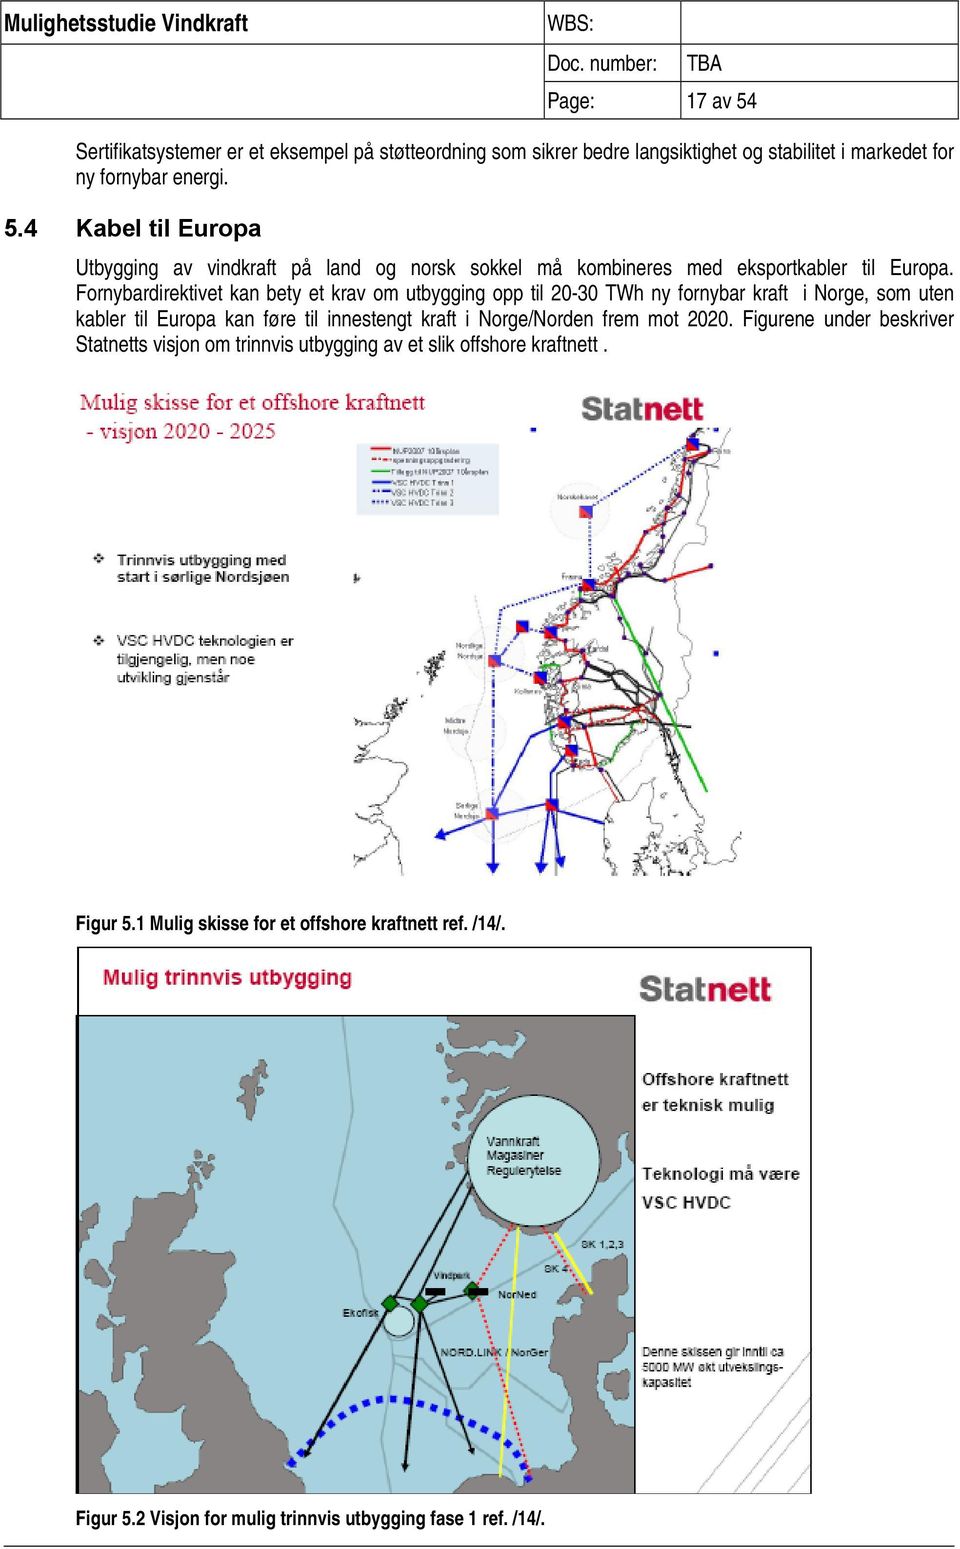 Norge/Norden frem mot 2020. Figurene under beskriver Statnetts visjon om trinnvis utbygging av et slik offshore kraftnett. Figur 5.